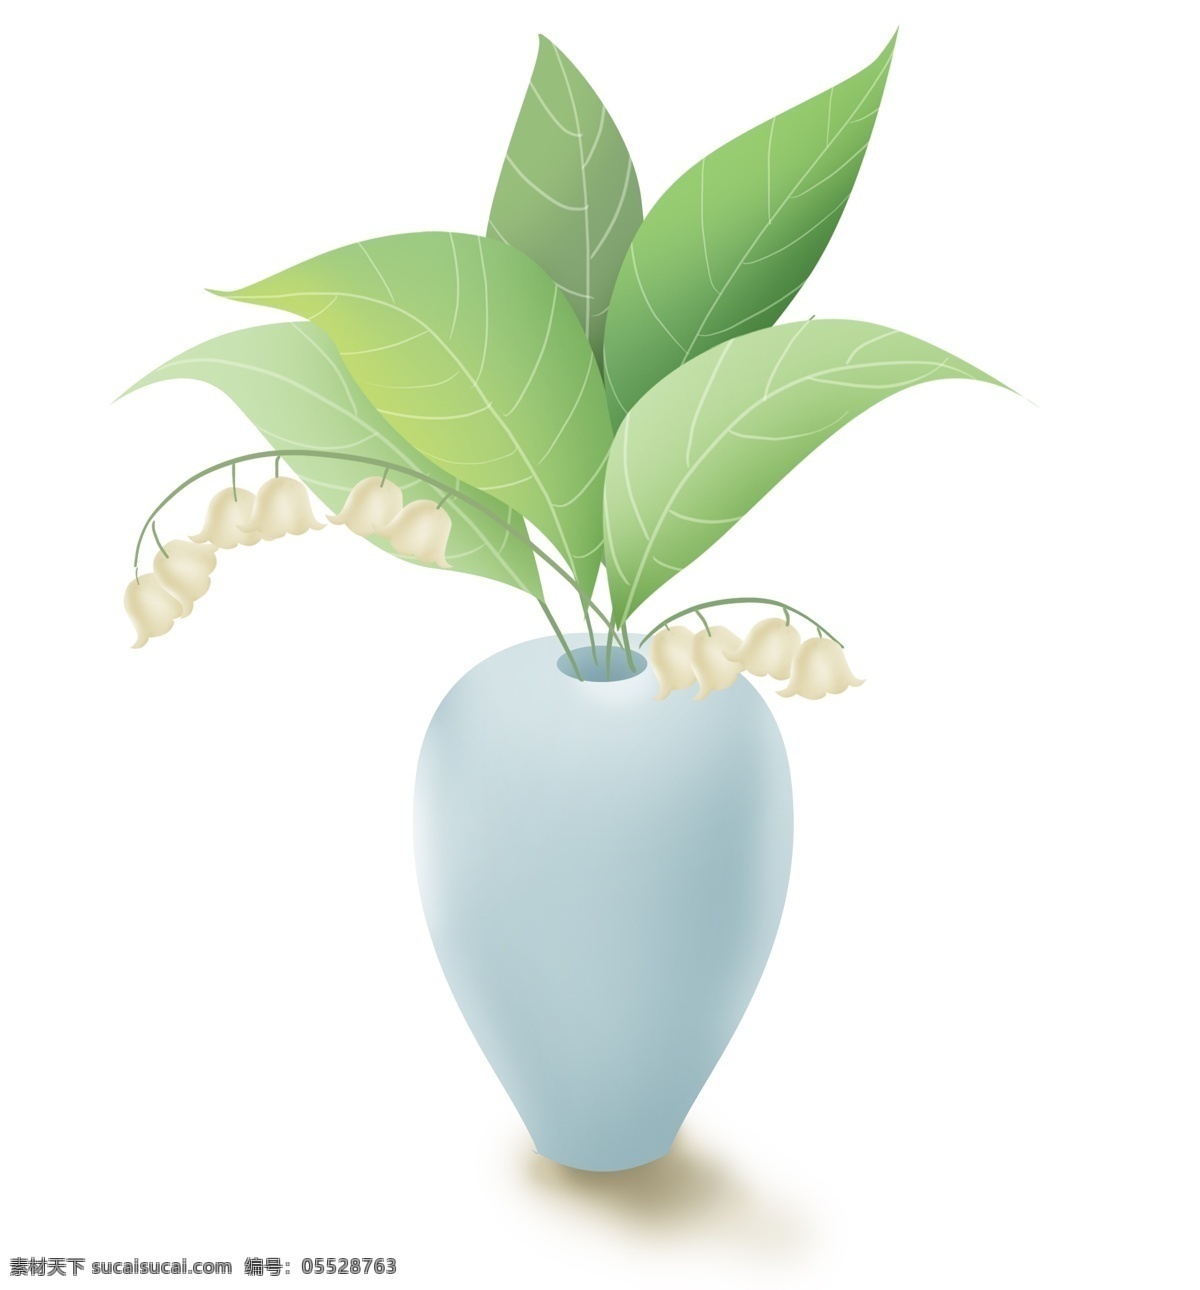 一瓶铃兰植物 白色铃兰 叶子 花瓶 花卉 花朵 春天 夏天 植物 铃兰 清新